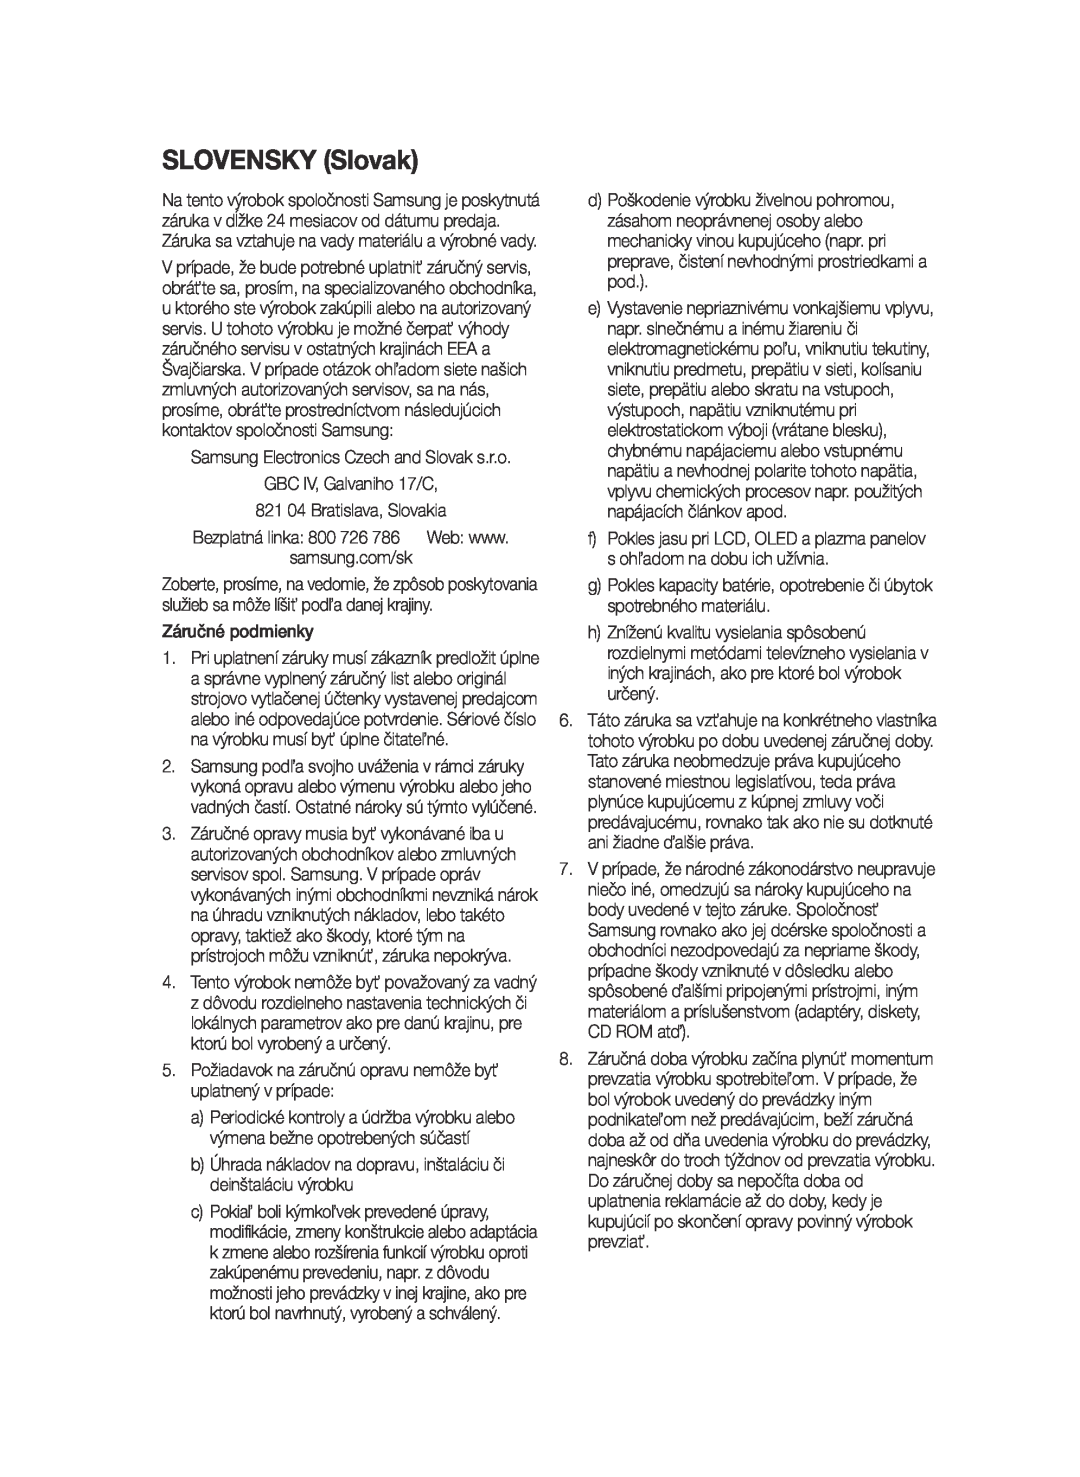 Samsung BD-E6300/EN manual SLOVENSKY Slovak, GBC IV, Galvaniho 17/C 821 04 Bratislava, Slovakia, Záručné podmienky 